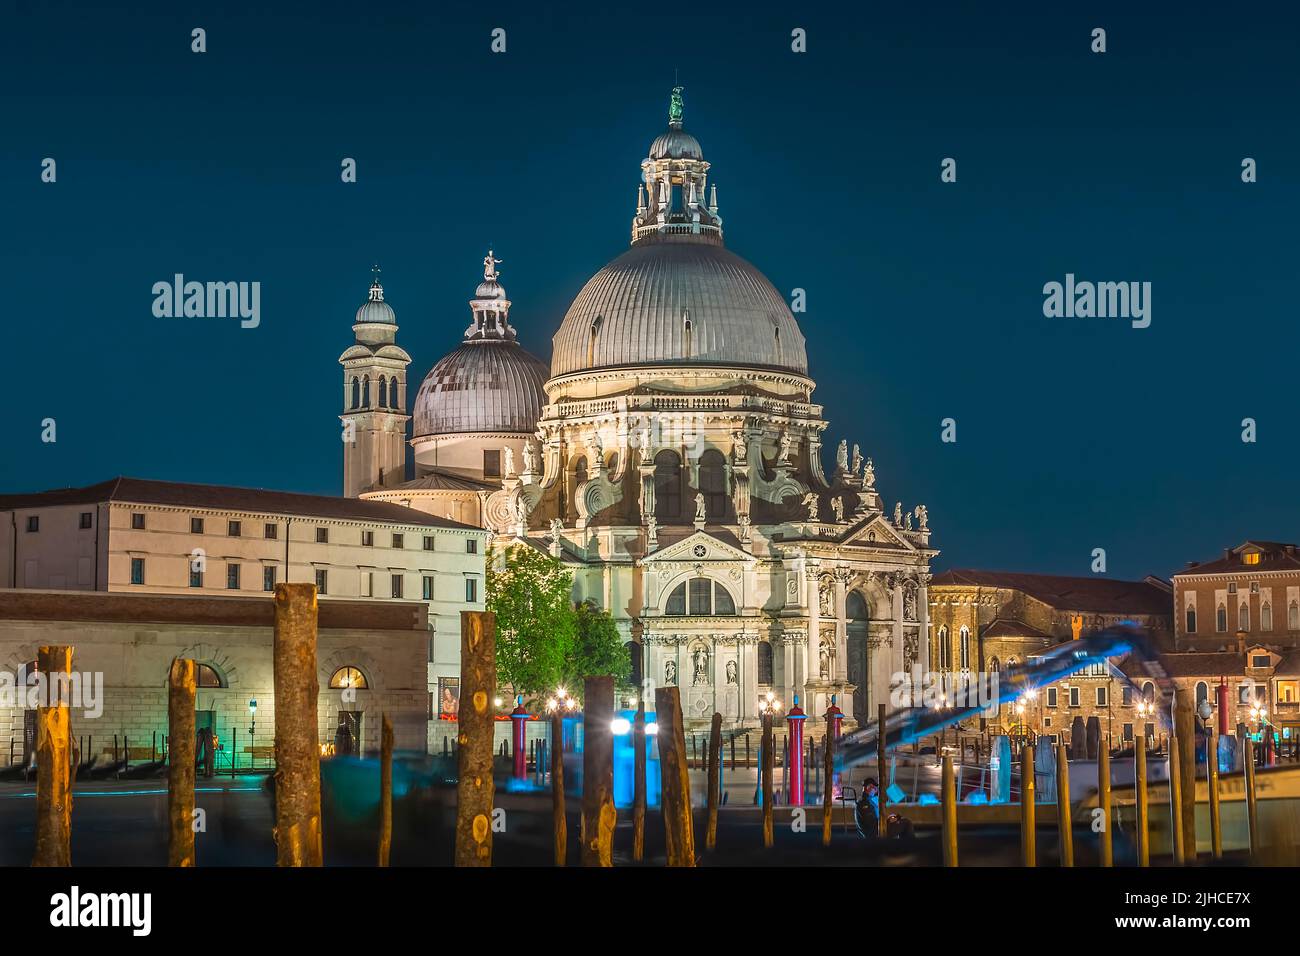 Basilica Santa Maria della Salute in Venice, Italy at night Stock Photo